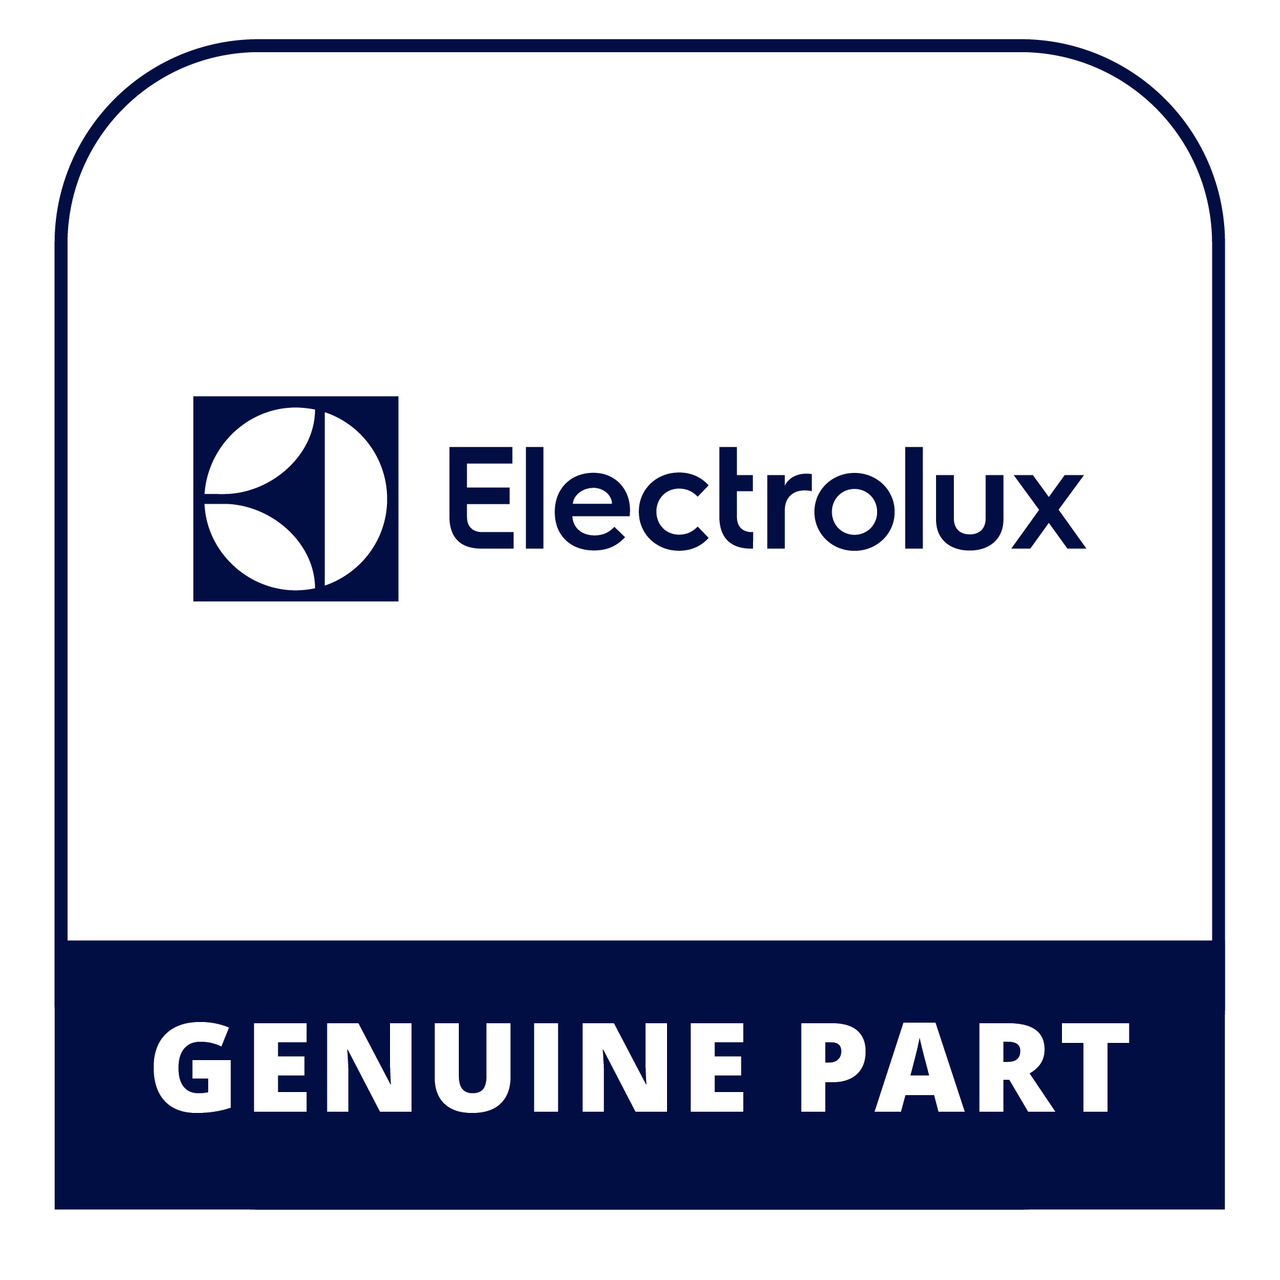 Frigidaire - Electrolux 5304505209 - Drain Pump - Genuine Electrolux Part